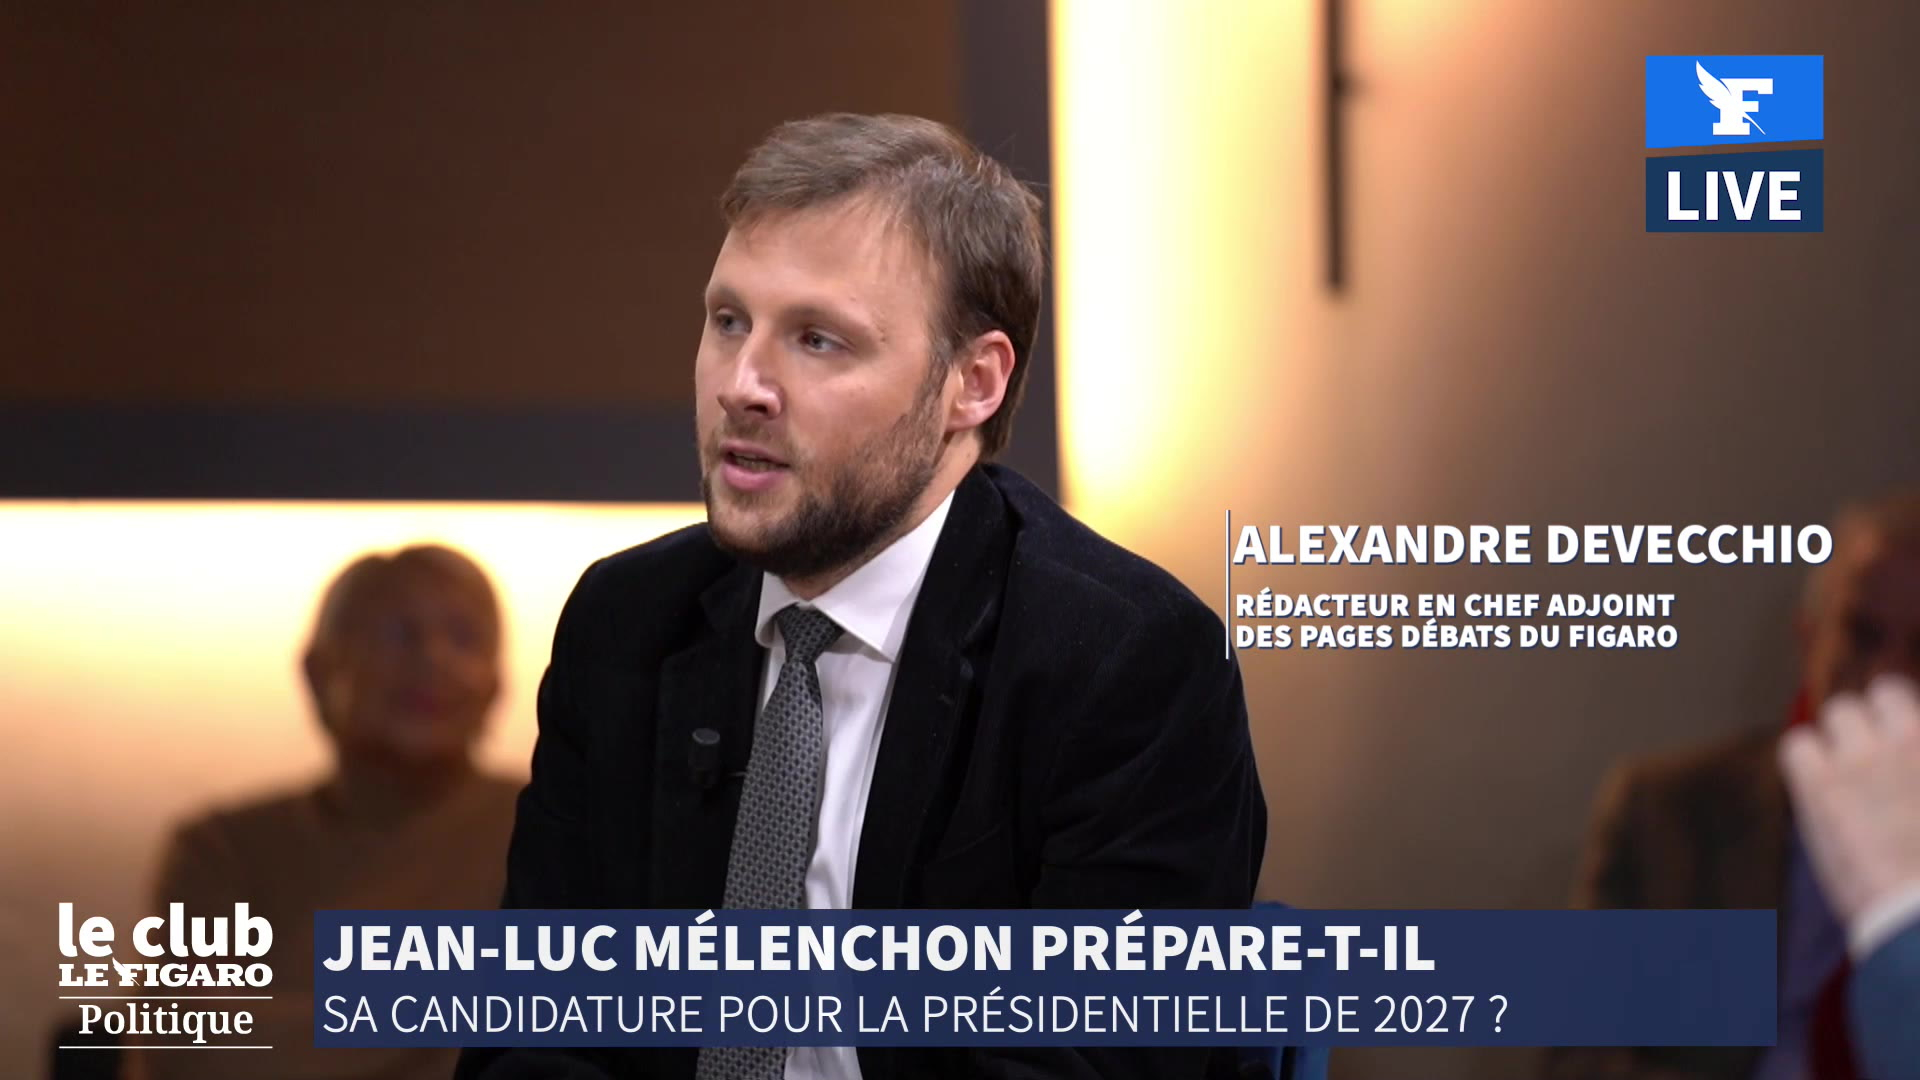 Alexandre Devecchio: La France Insoumise, c'est une gigantesque auberge espagnole